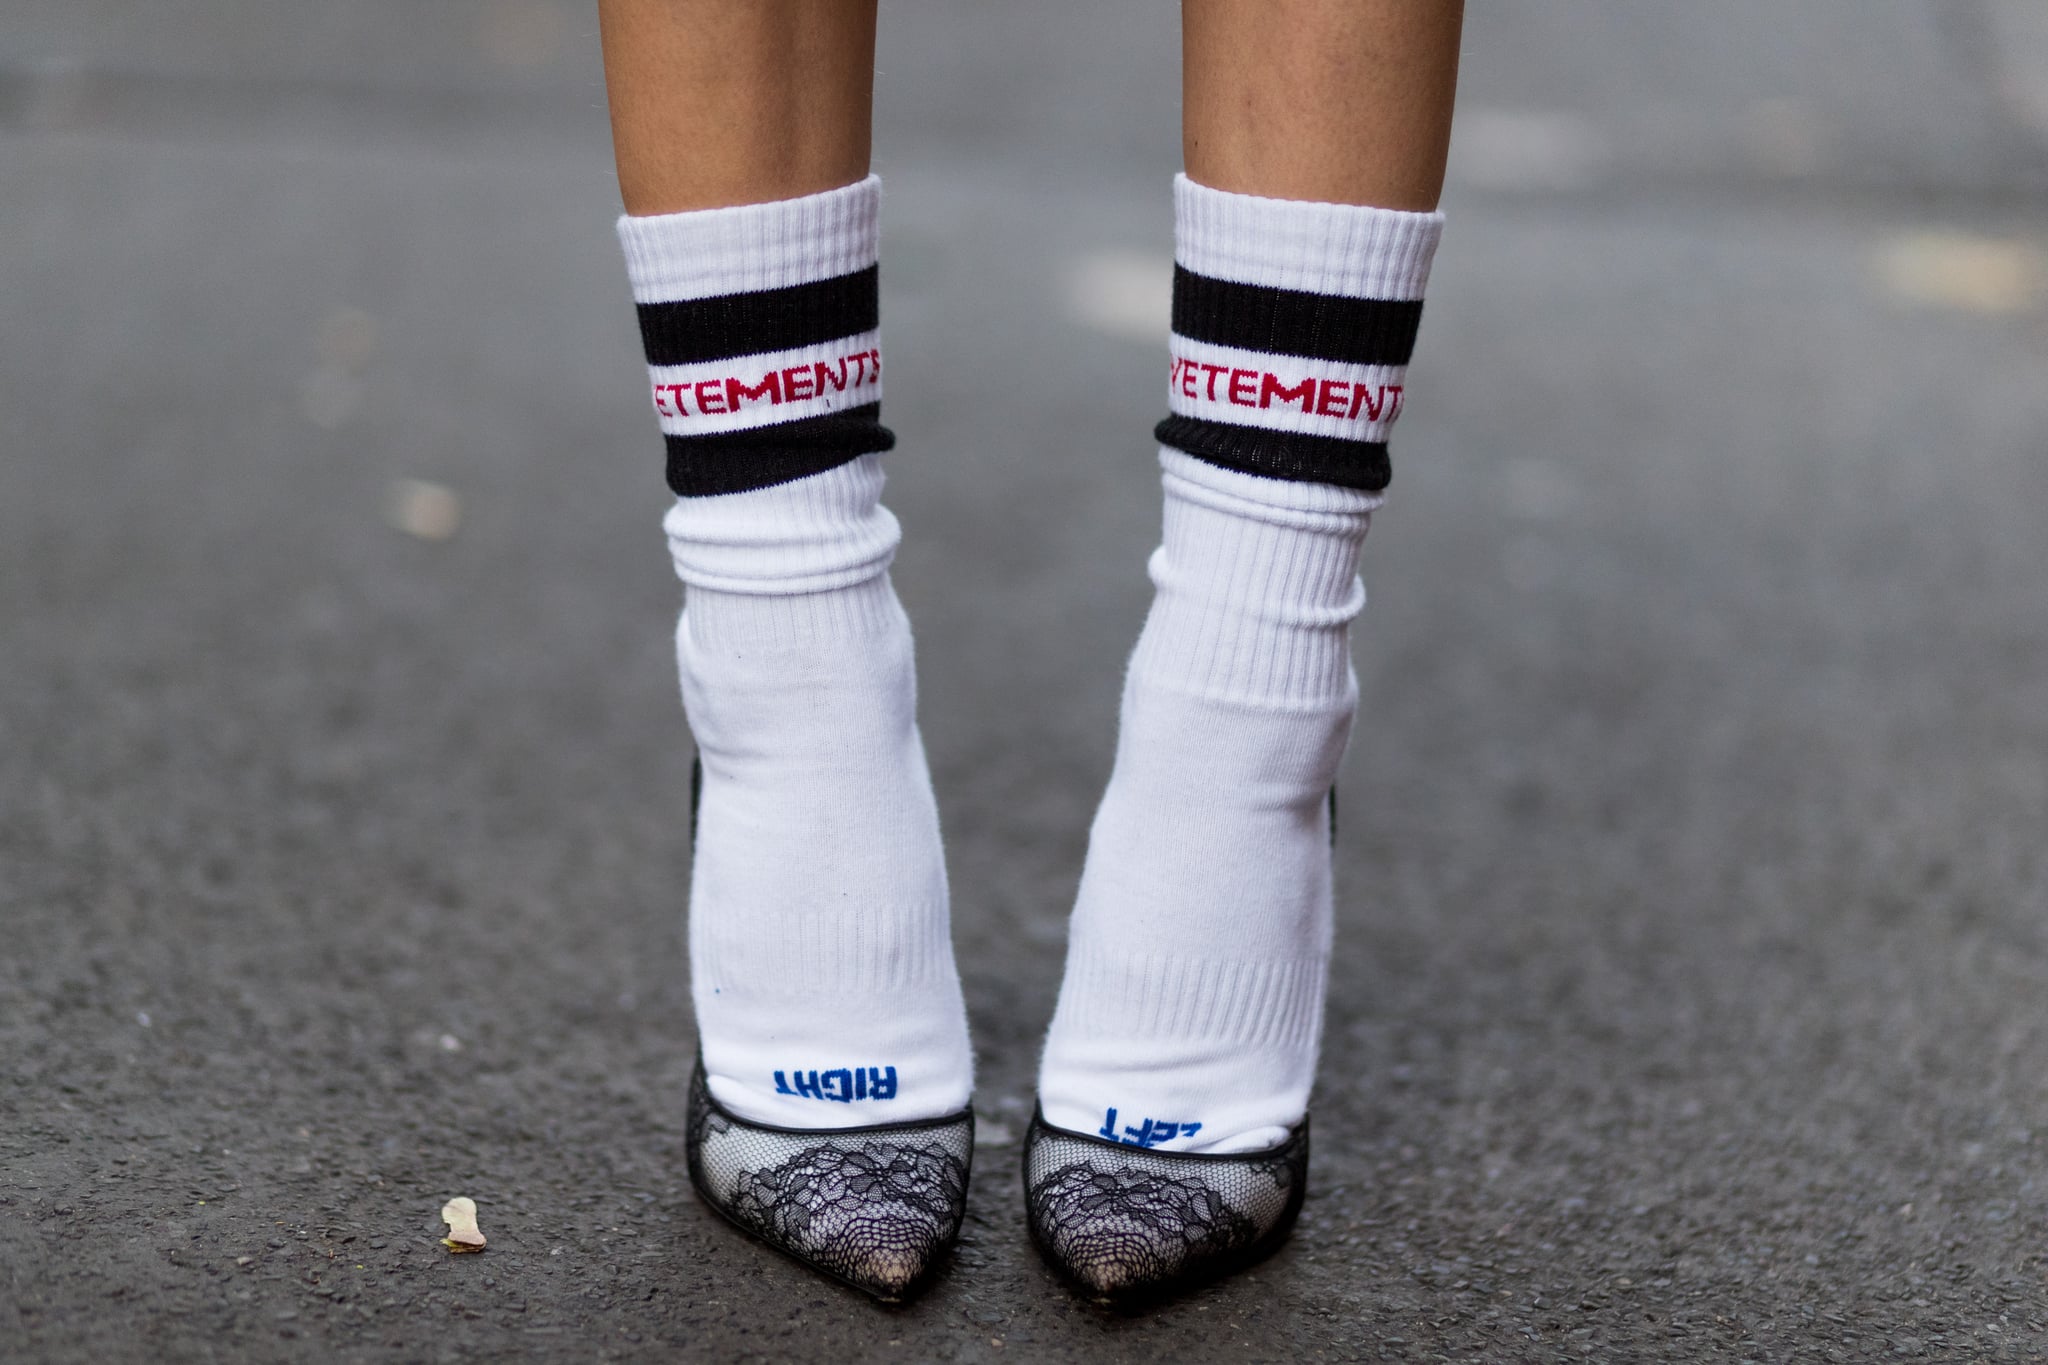 Socks Street Nike. Socken. Worn Socks. Vetements Socks Shoes. Wearing socks